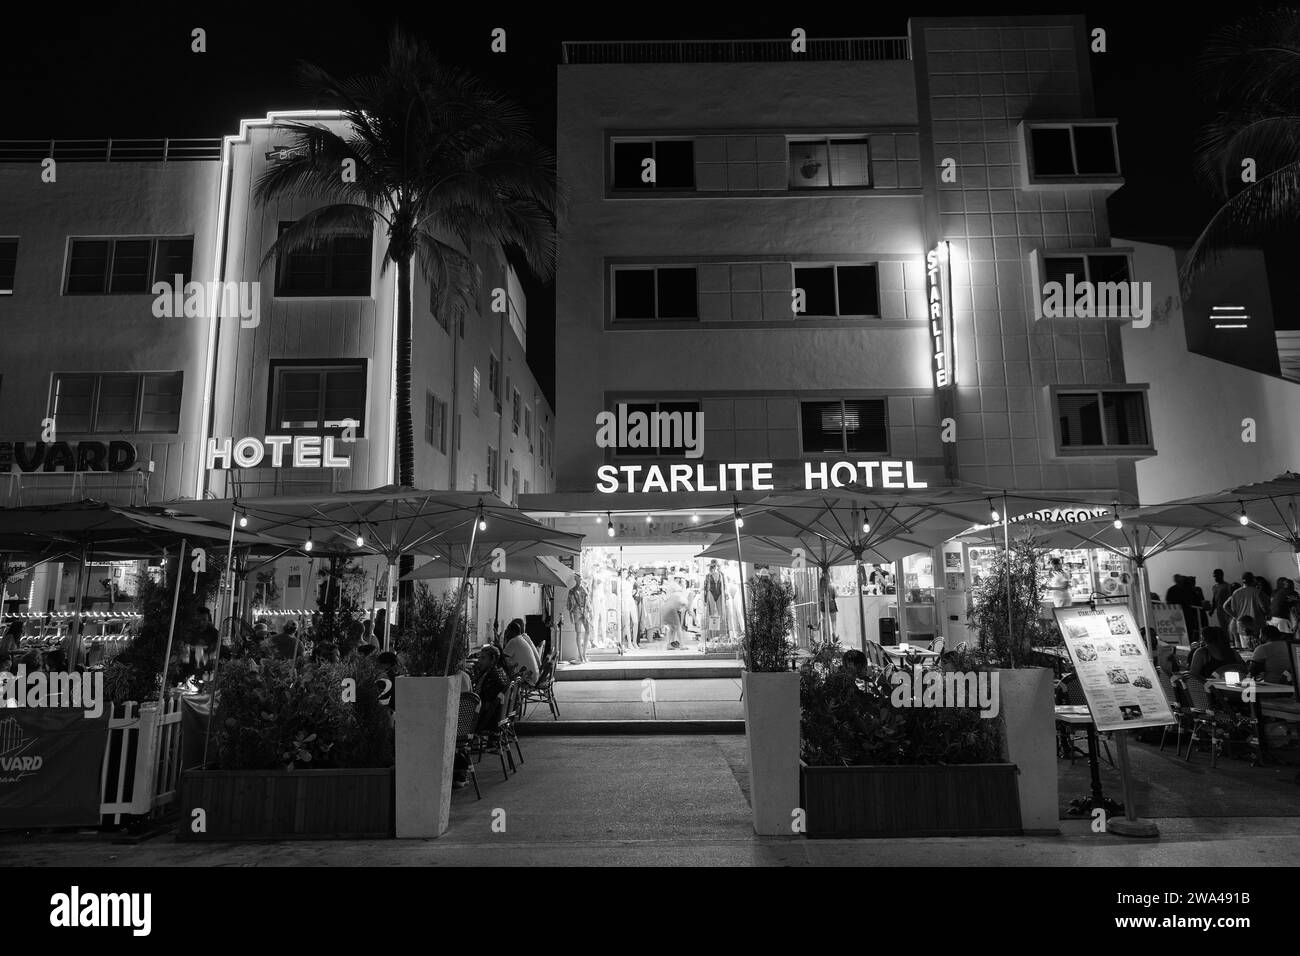 Miami, Floride États-Unis - 16 avril 2021: Miami South Beach Ocean Drive Architecture illuminée dans la nuit ville de miami avec hôtel starlite Banque D'Images